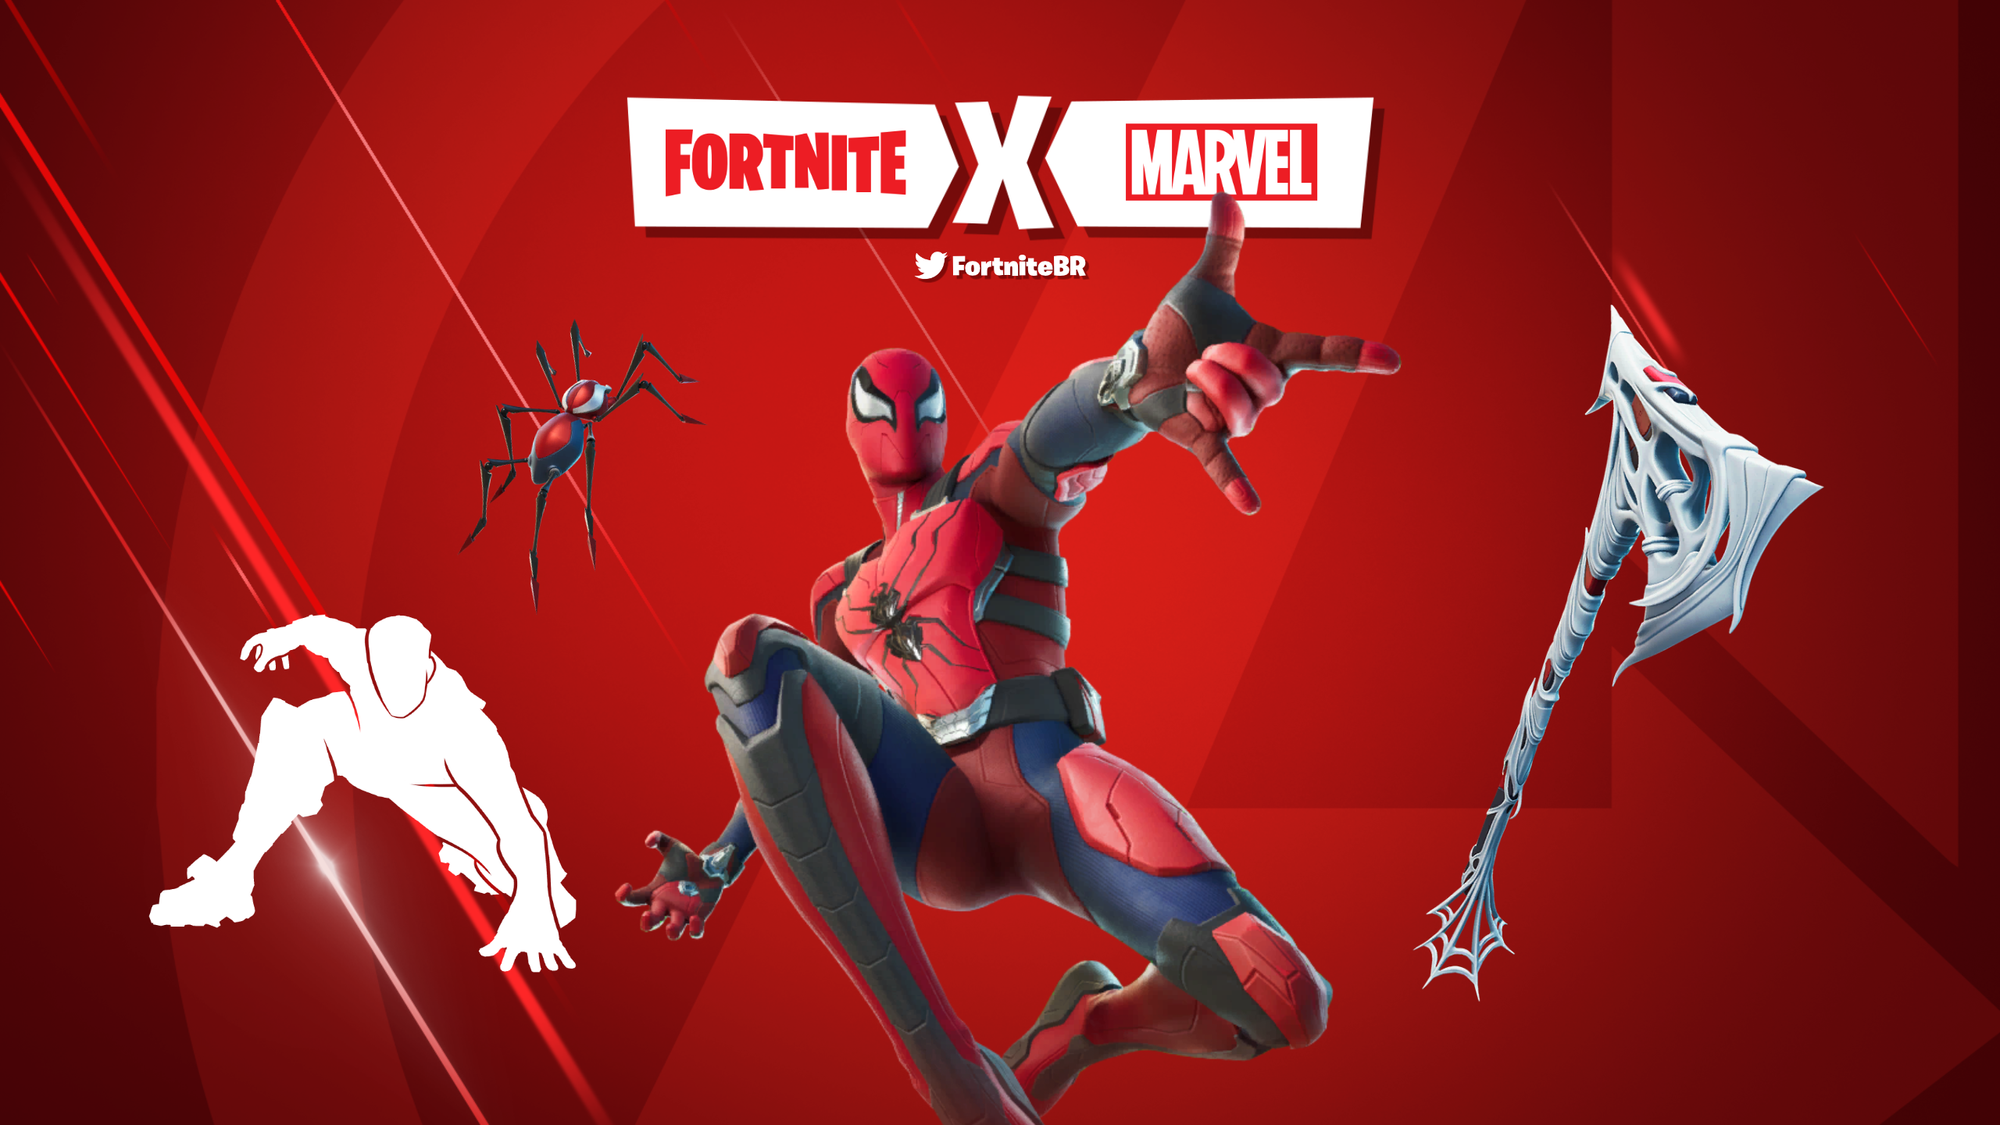 Marvel's SpiderMan has arrived in Fortnite (again) Fortnite News